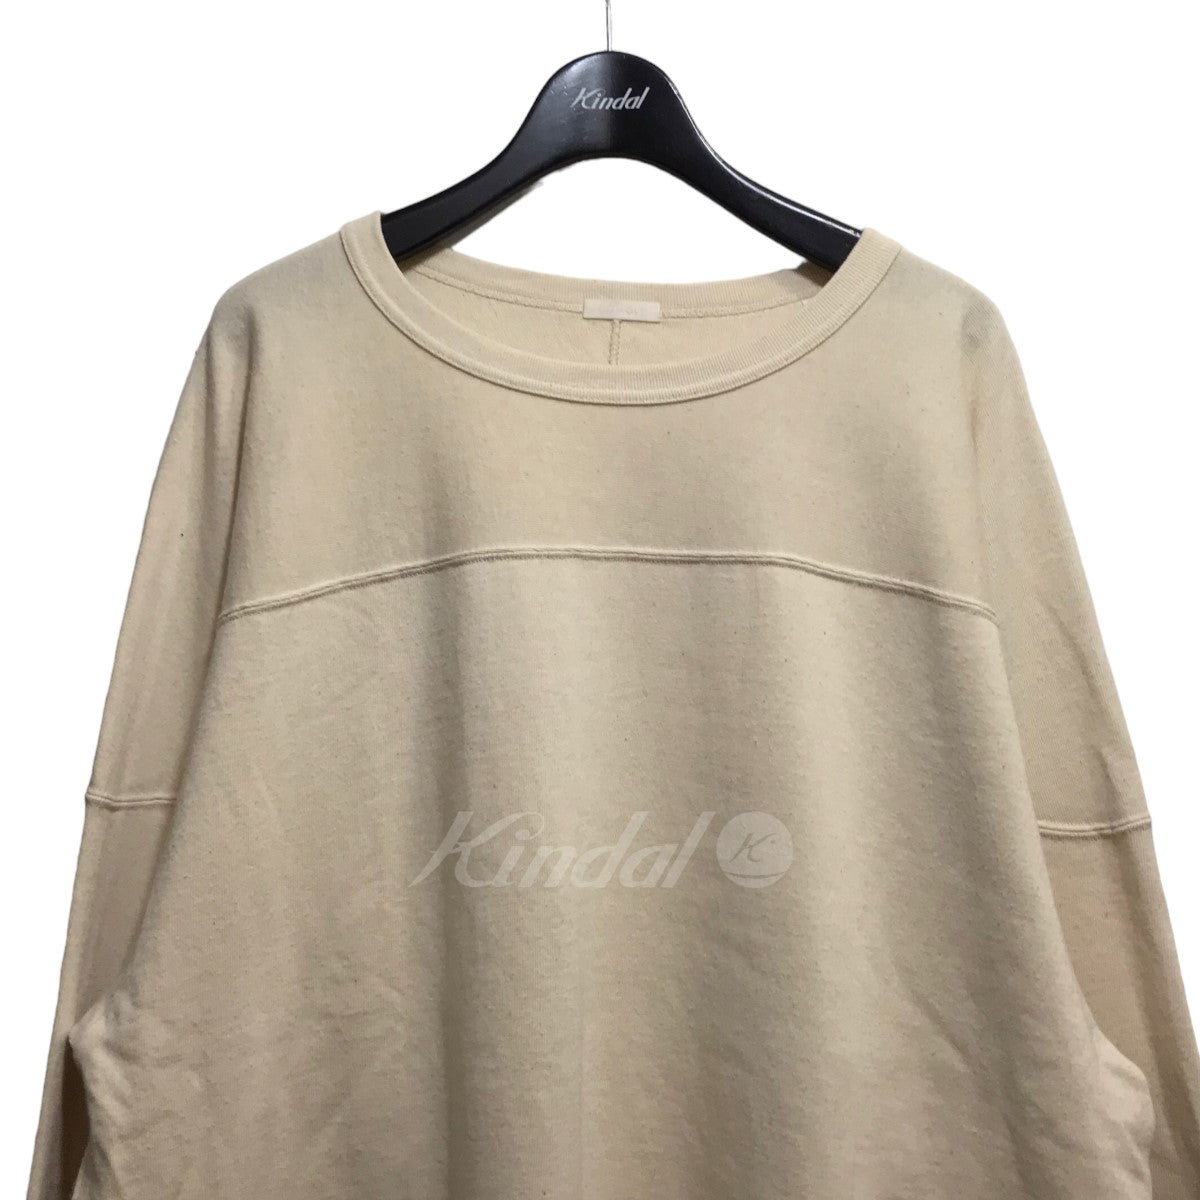 COMOLI(コモリ) 22SS フットボールTシャツ V01-05005 V01-05005 